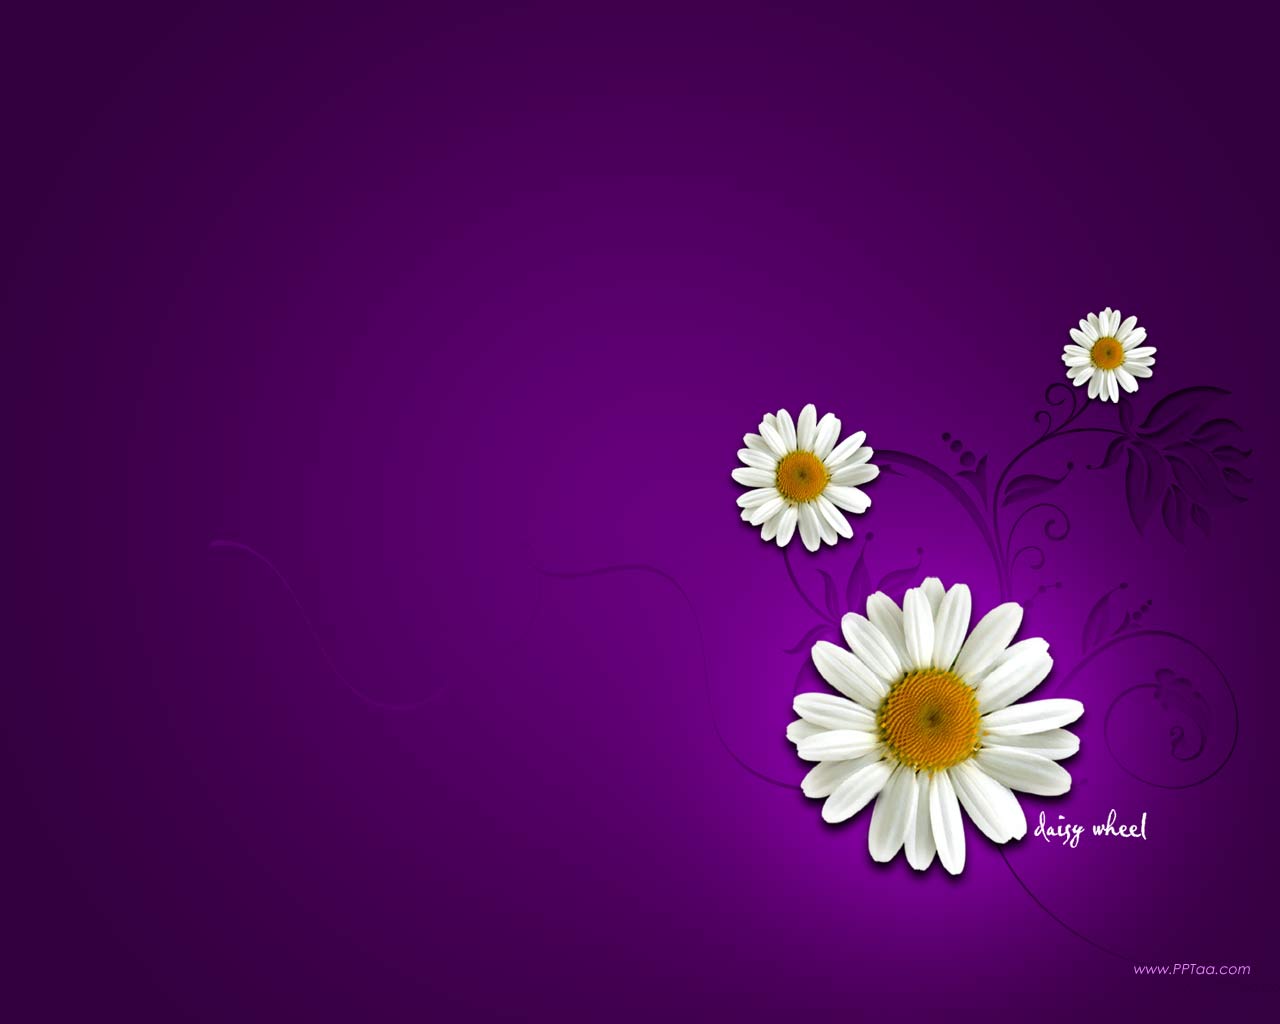 daisy flower wallpaper downloaddaisy flower wallpaper desktop 1280x1024